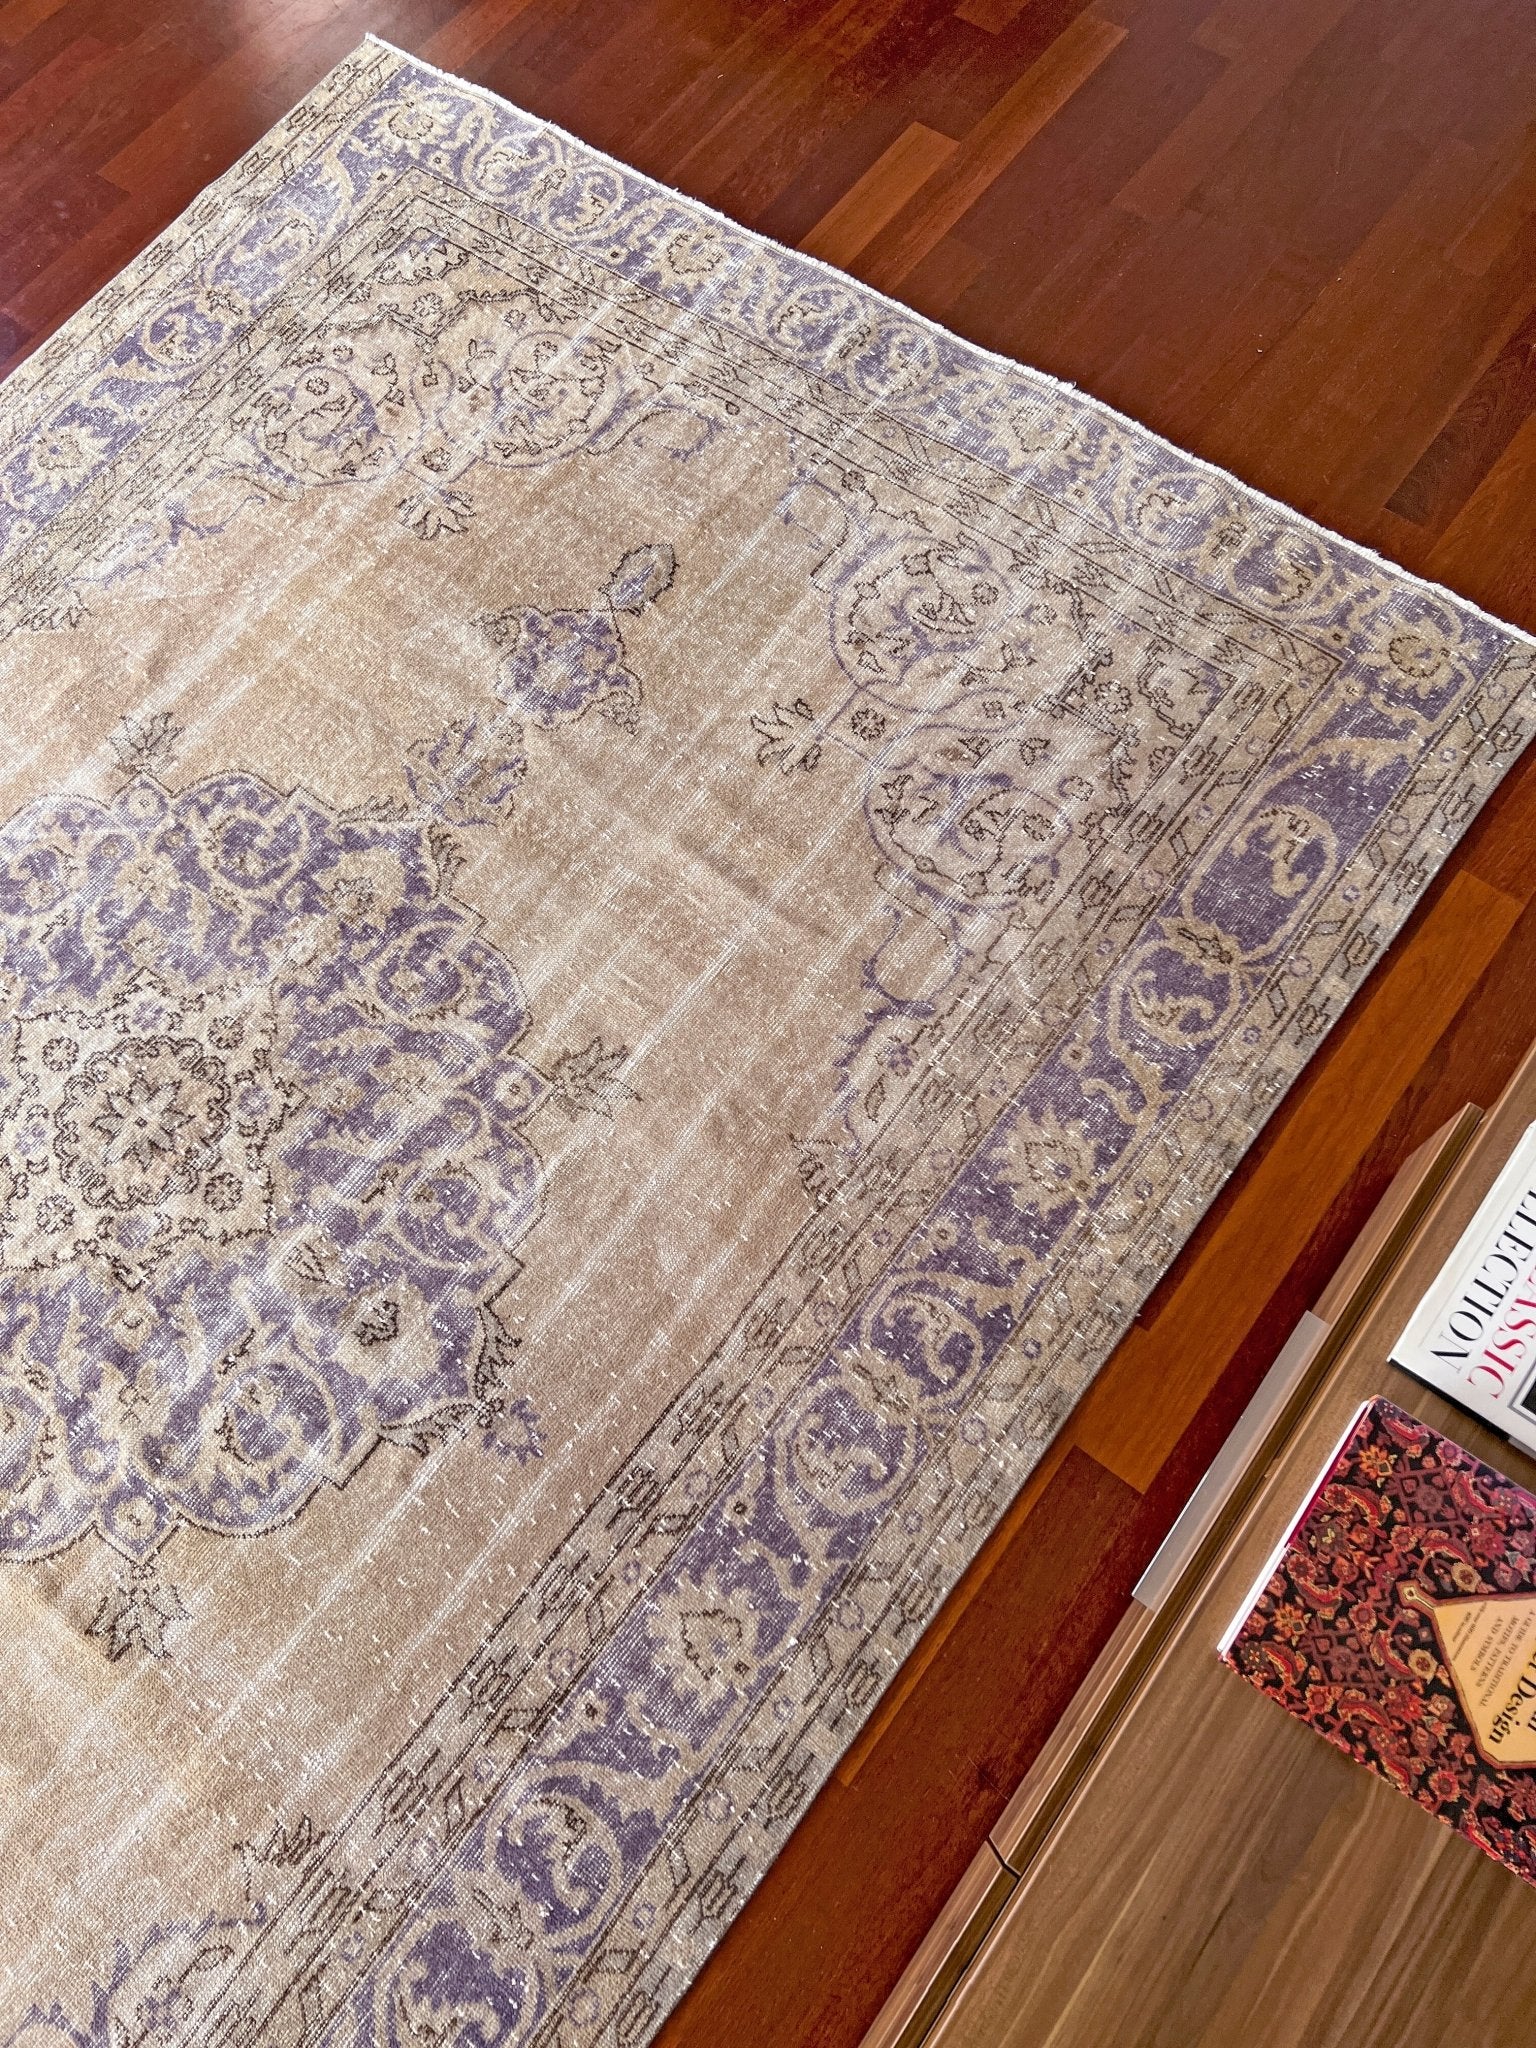 muted distressed turkish rug palo alto oriental rugs san francisco bay area buy vintage rug berkeley buy handmade rug online